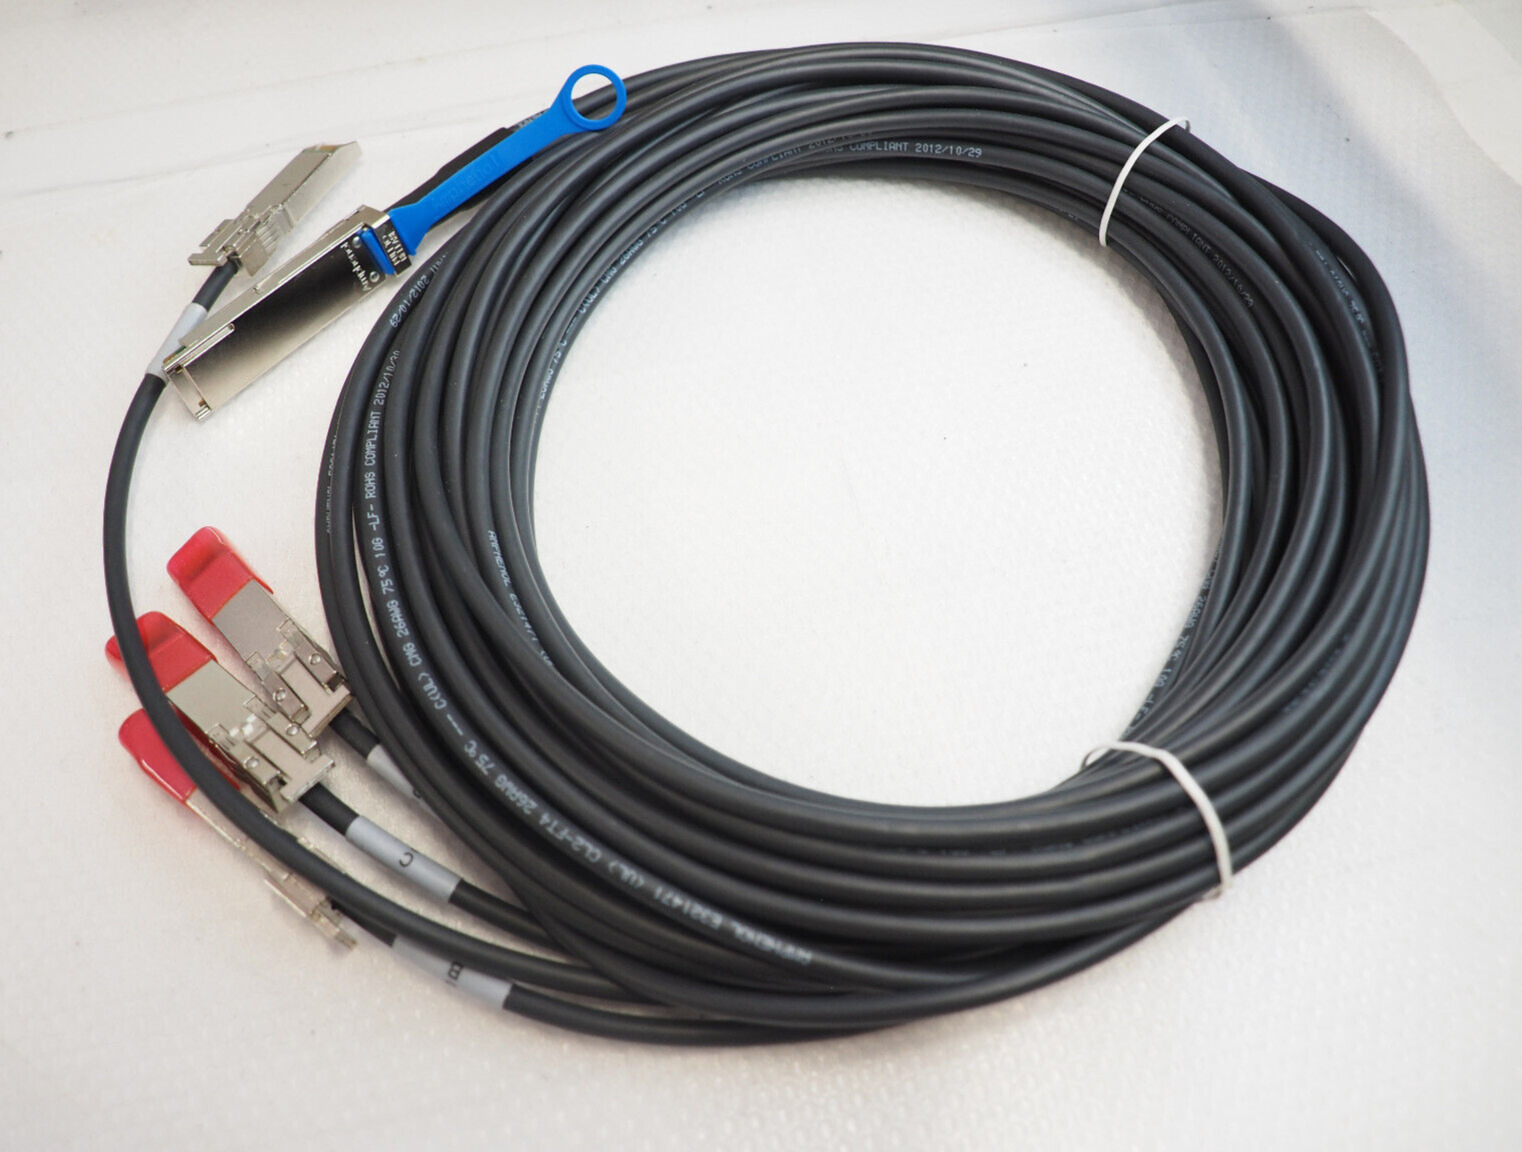 AMPHENOL SF-QSFP4SFPPS-005 602630005 QSFP to 4 SFP+ Splitter 5m 16.4ft Cable